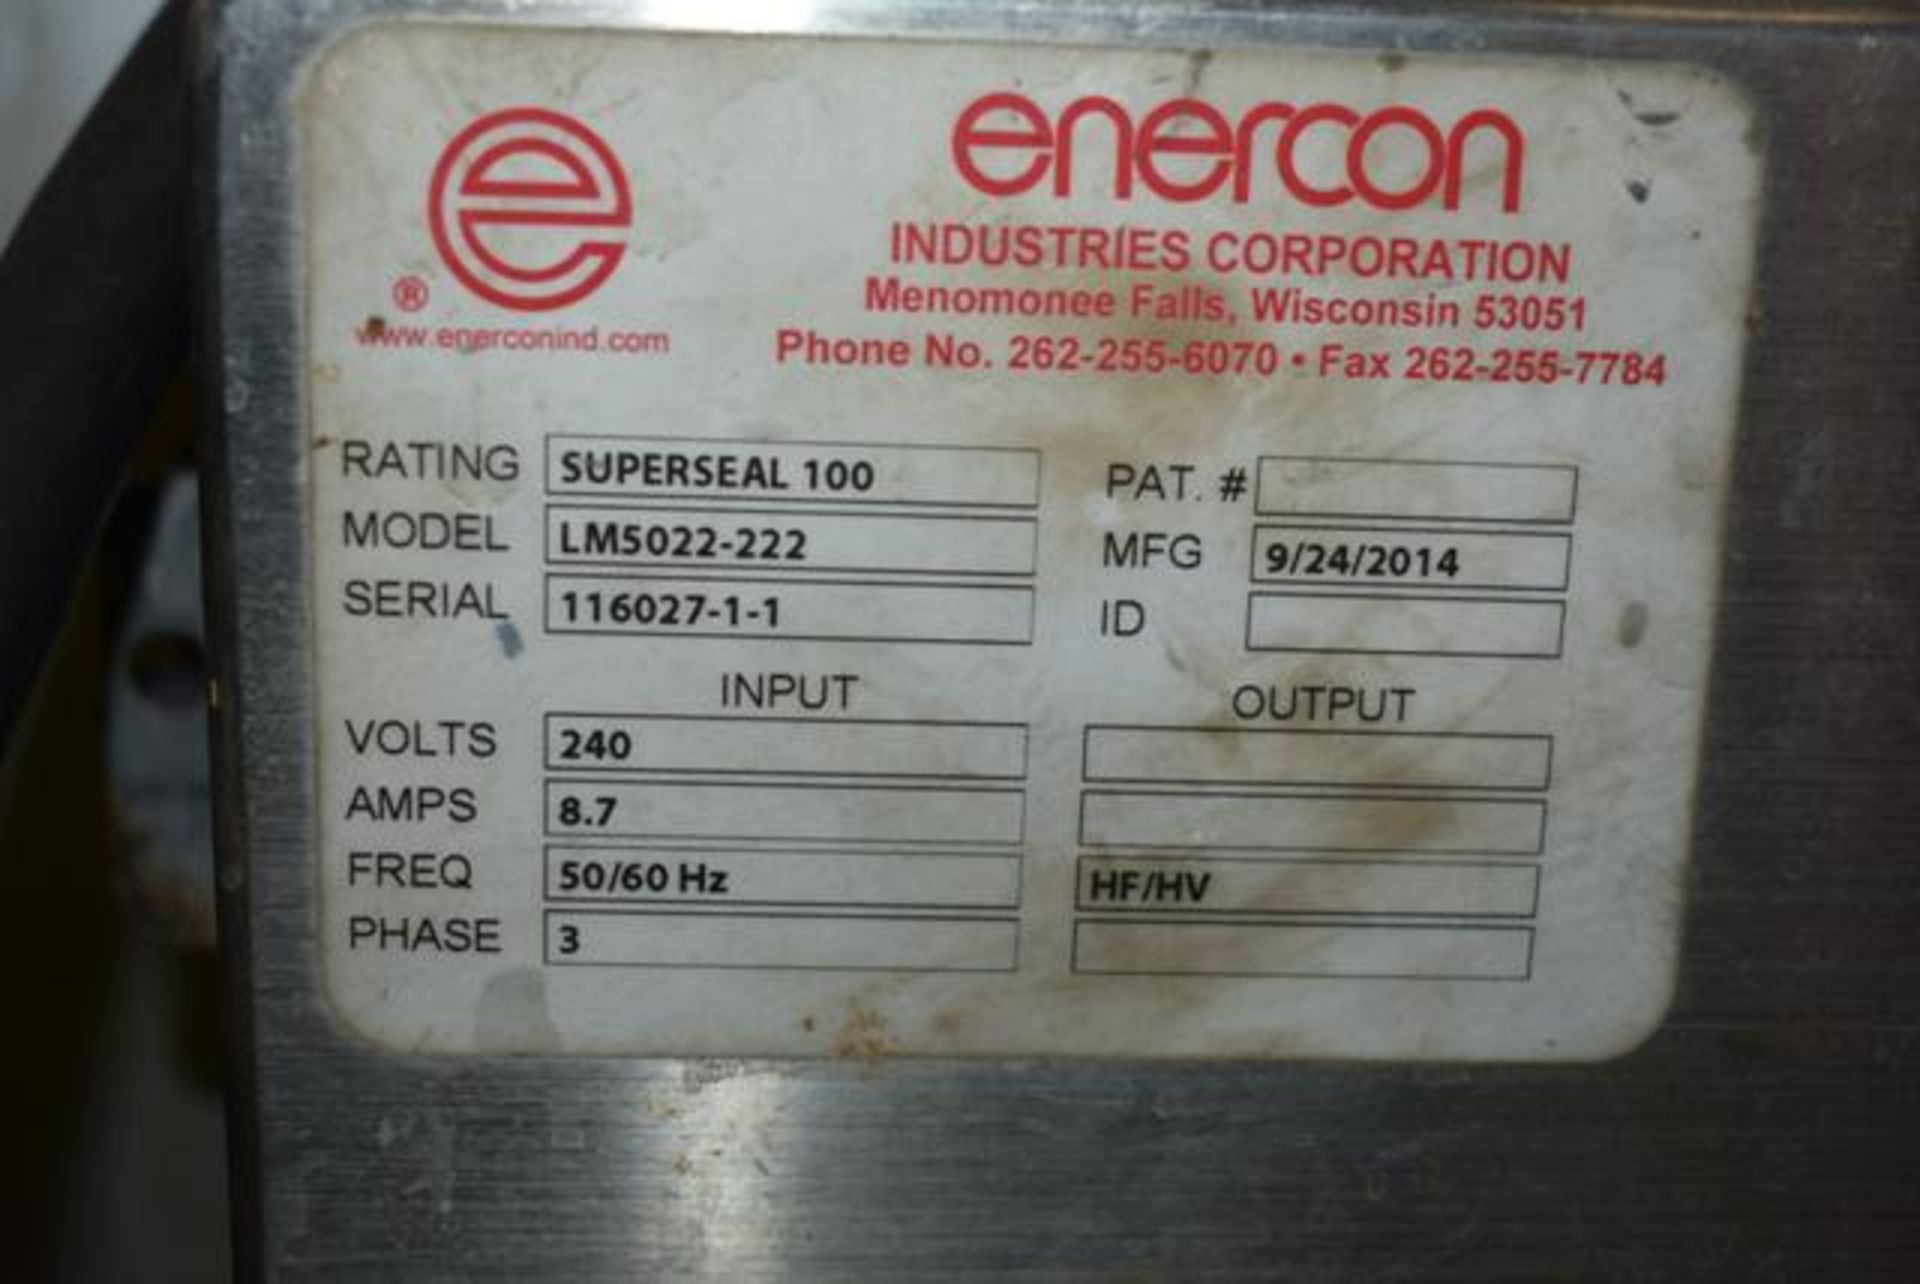 Enercon Model #LM5022-222 Super Seal 100 Sealer - Image 2 of 2